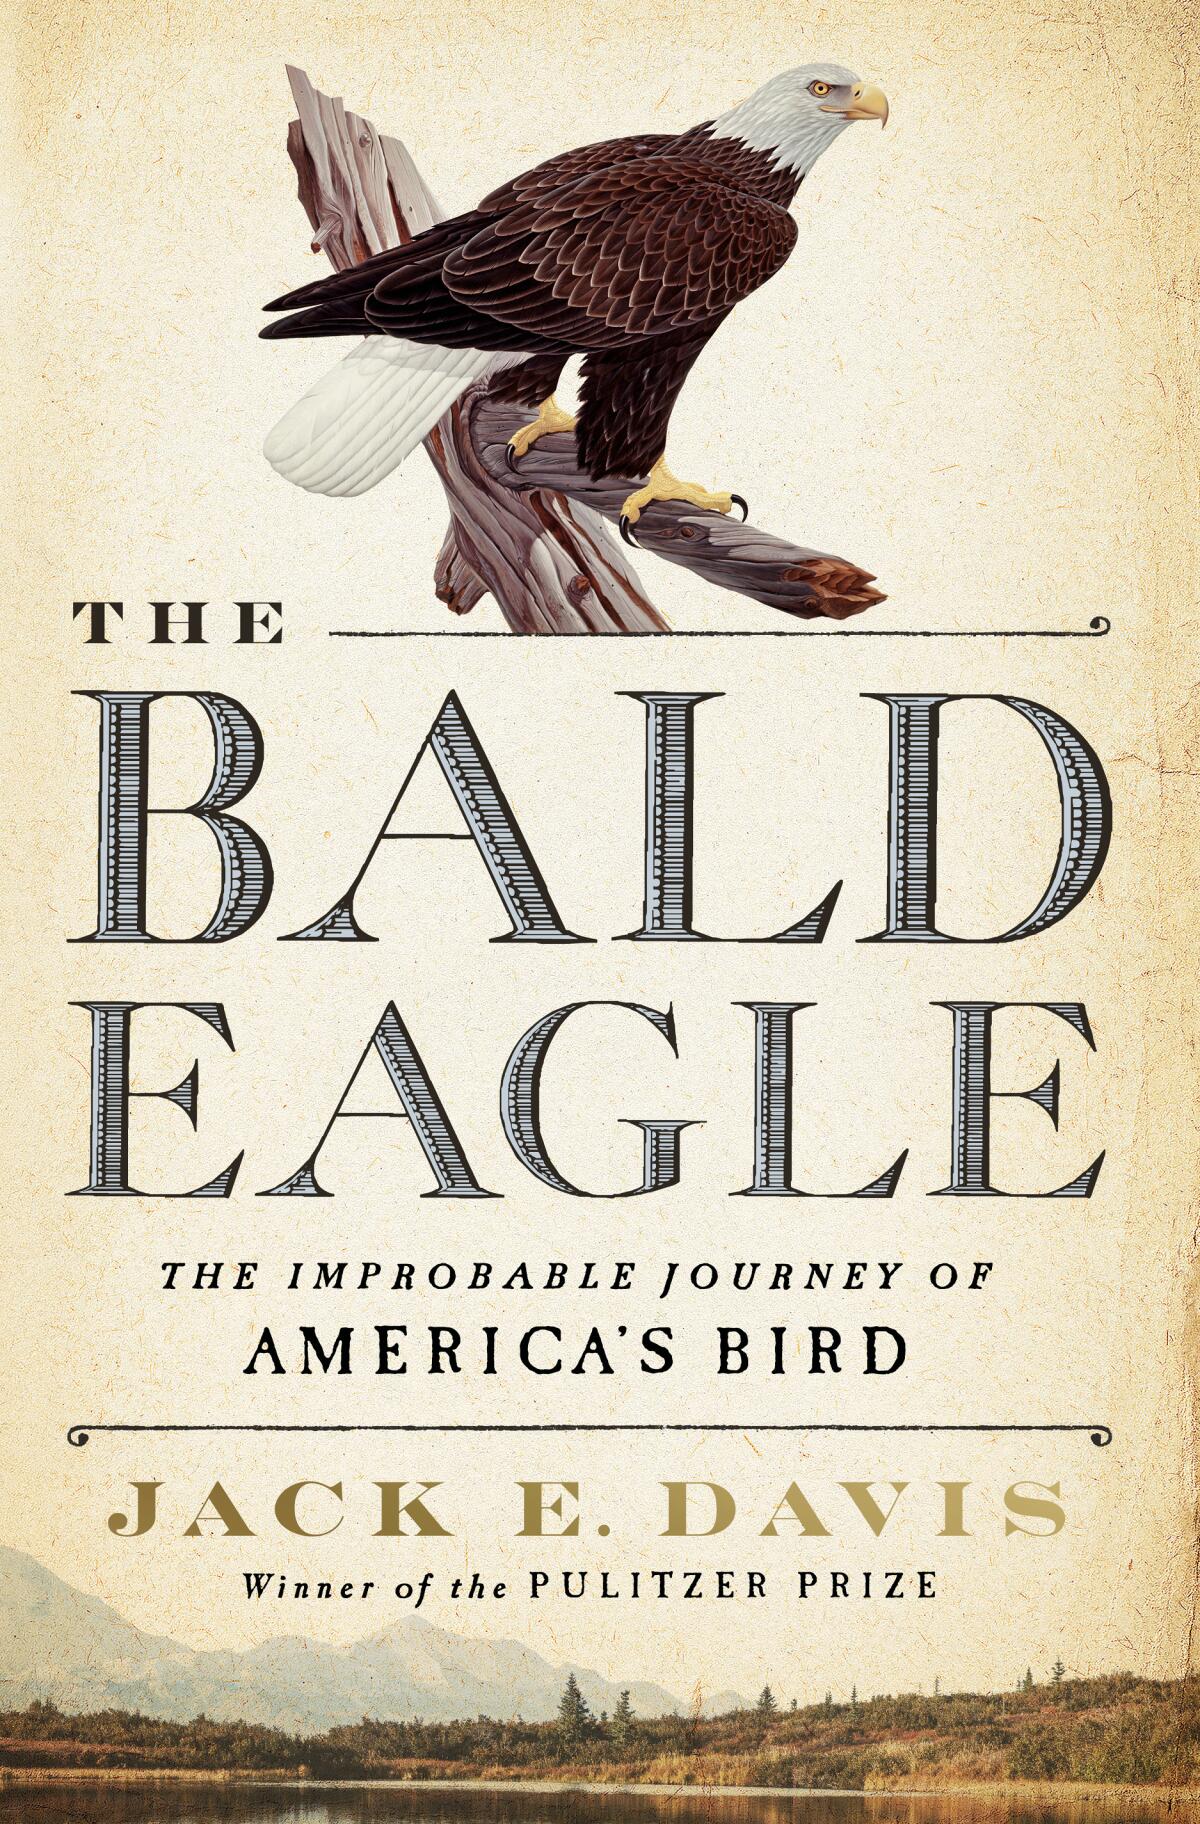 "The Bald Eagle" by Jack. E Davis